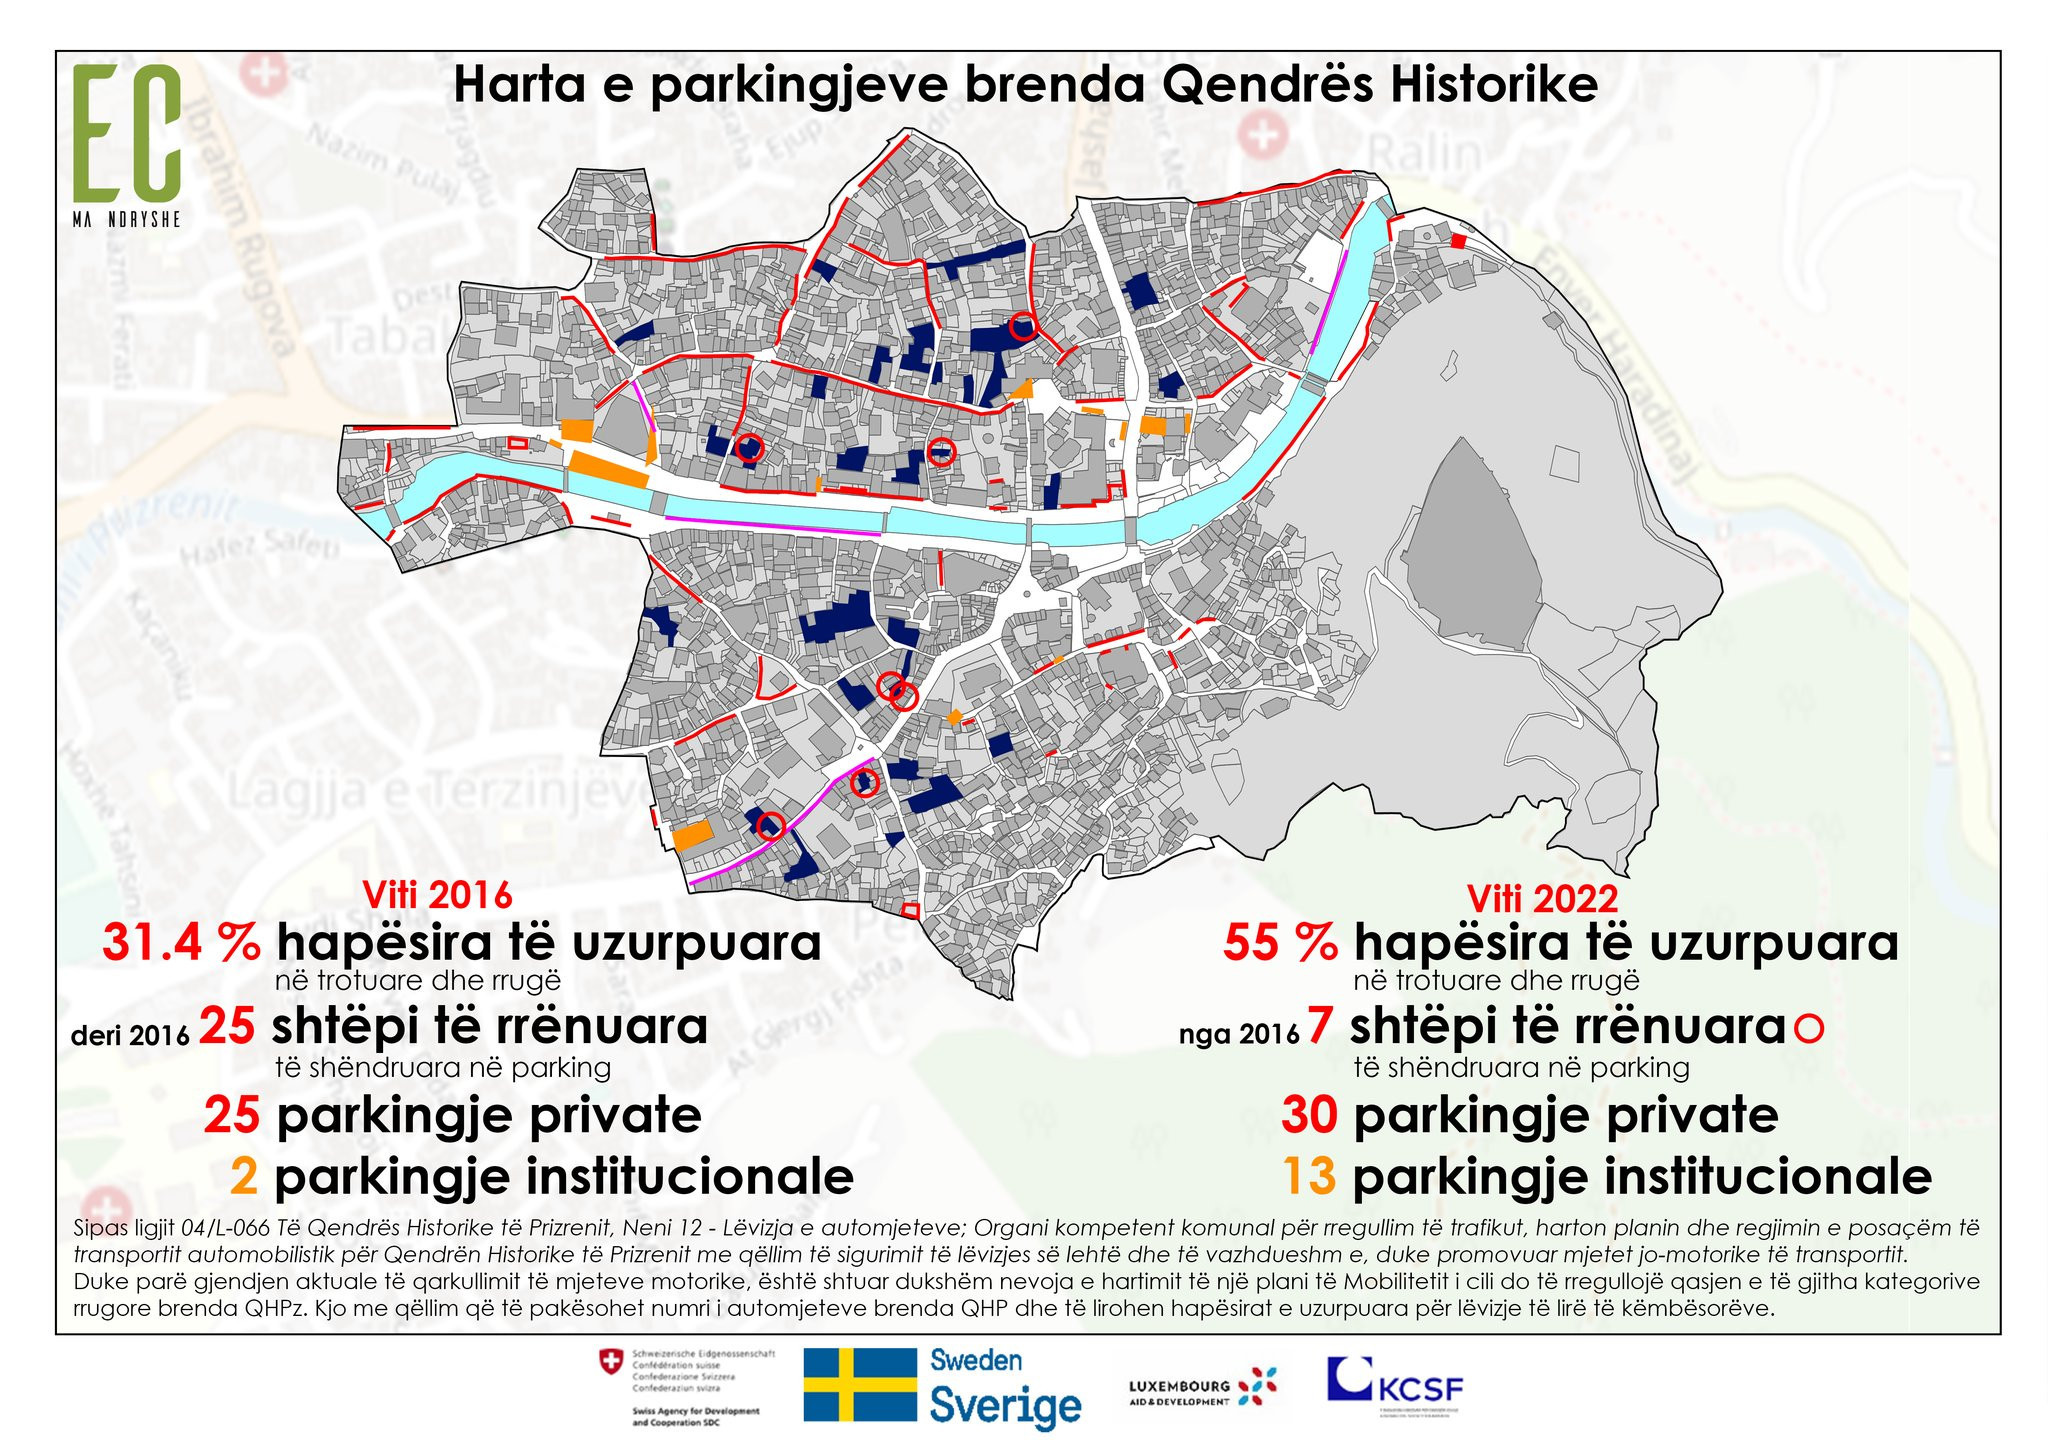 Parkingjet brenda Qendrës Historike të Prizrenit